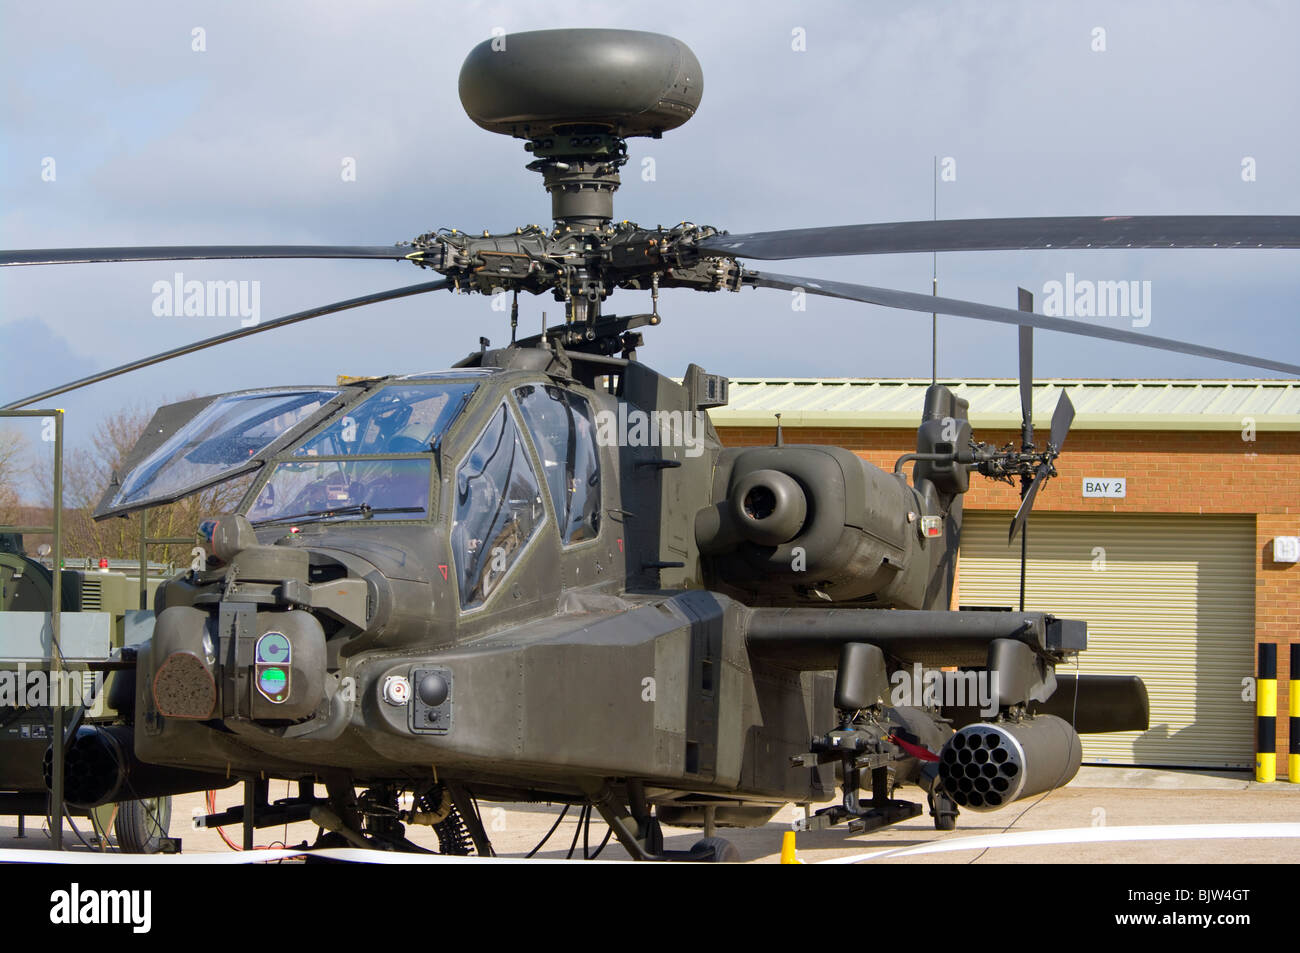 Un helicóptero de ataque del ejército británico Westland WAH-64 Apache MK1 el arco Foto de stock